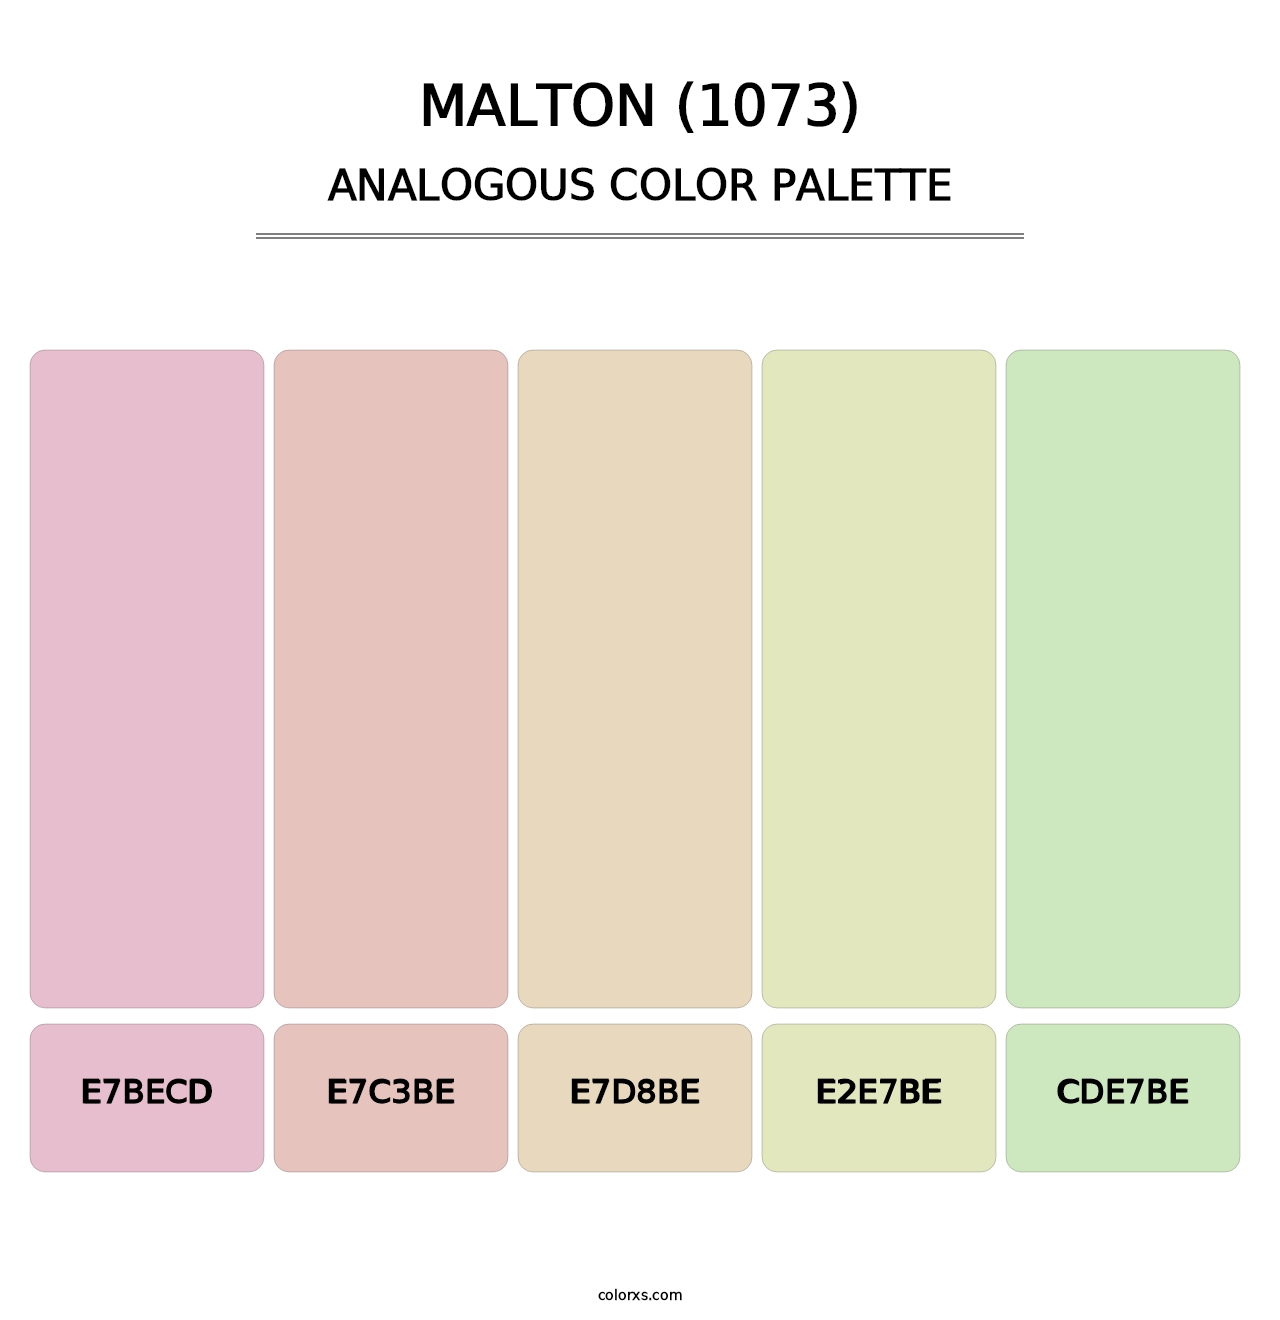 Malton (1073) - Analogous Color Palette